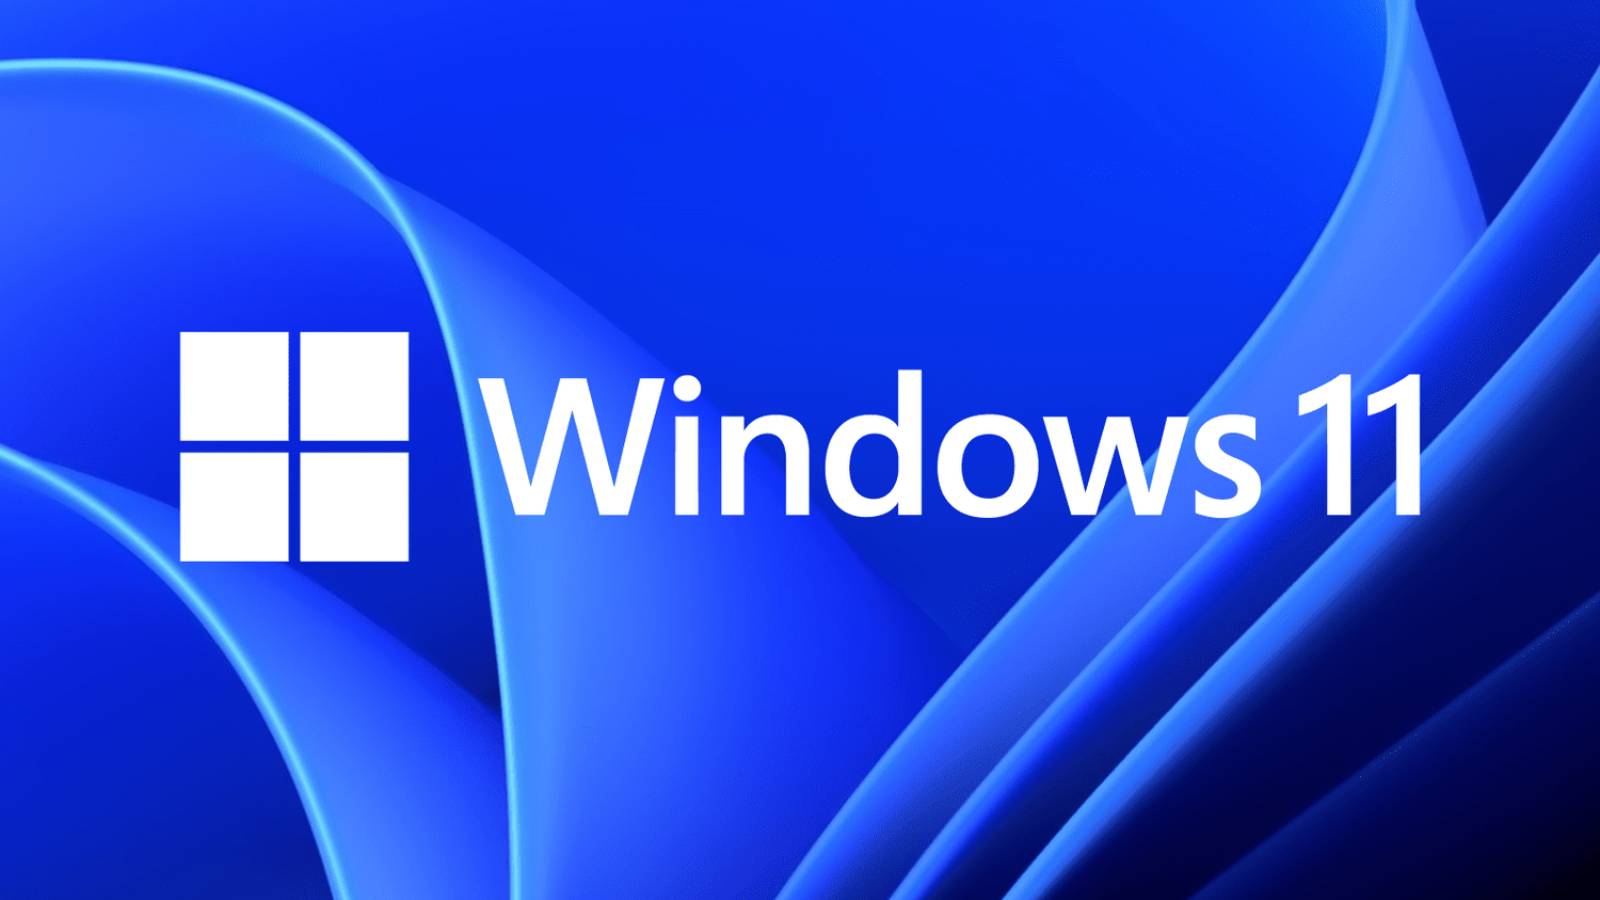 windows-11:-meniul-secret-pe-care-microsoft-vrea-sa-il-lanseze-pe-pc-uri-|-idevice.ro